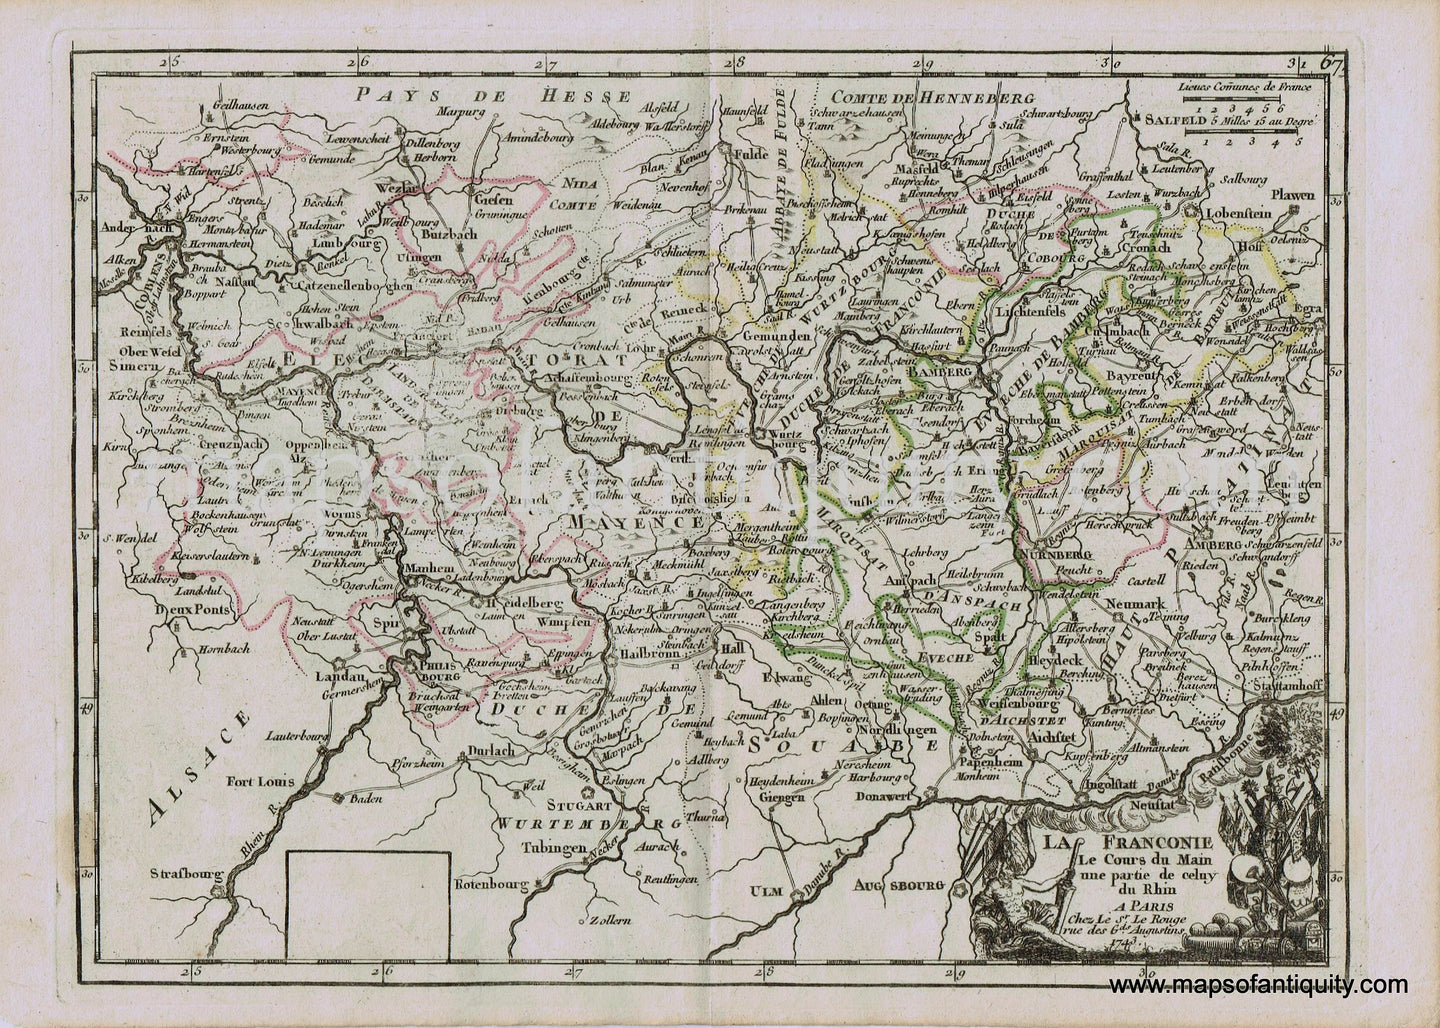 Antique-Hand-Colored-Map-Europe-La-Franconie-Le-Cours-du-Main-une-partie-de-celuy-du-Rhin-1748-Le-Rouge-Germany-1700s-18th-century-Maps-of-Antiquity